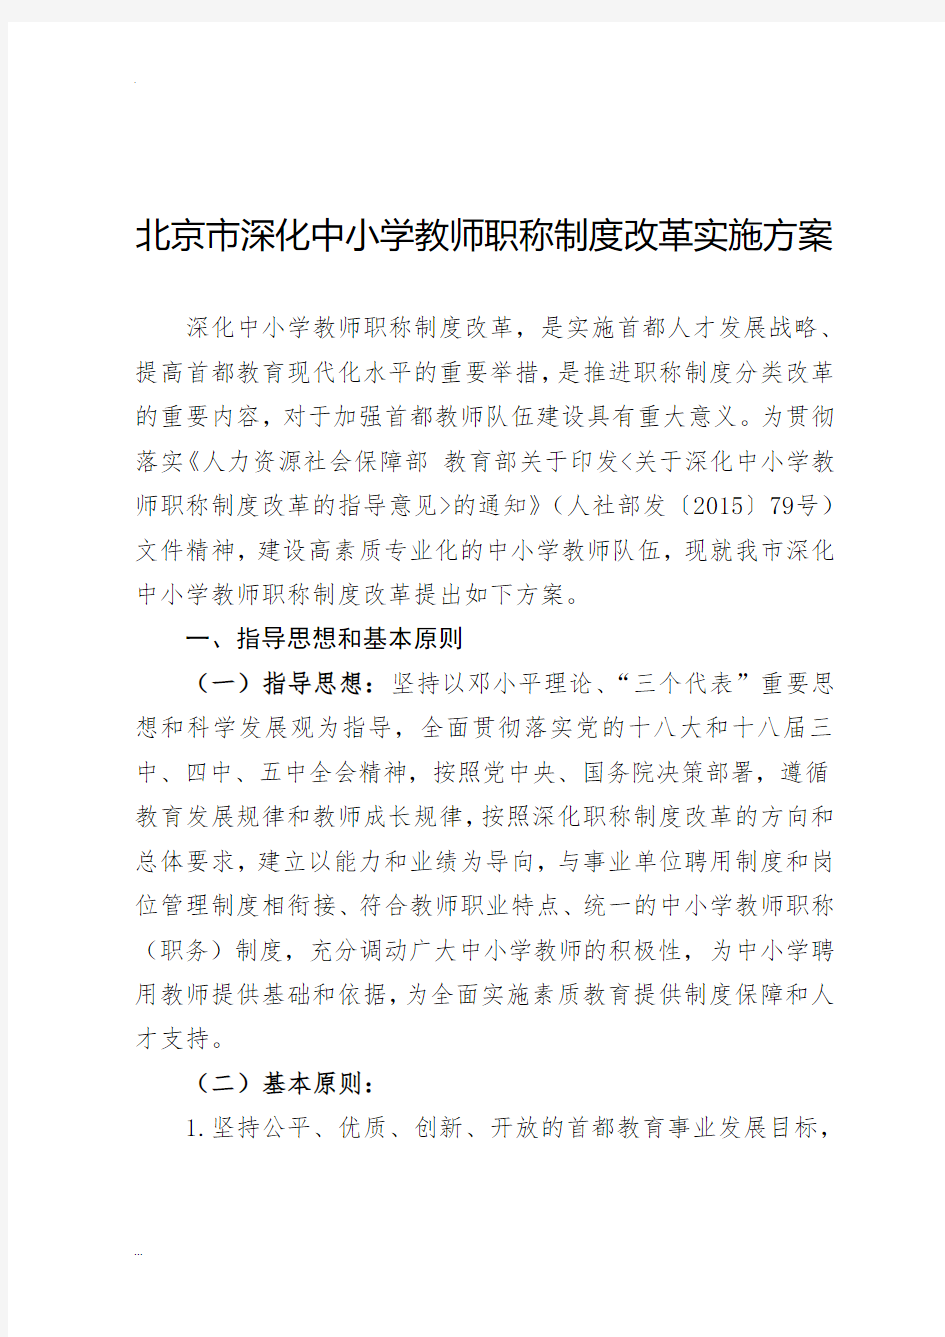 北京市深化中小学教师职称制度改革实施方案文件